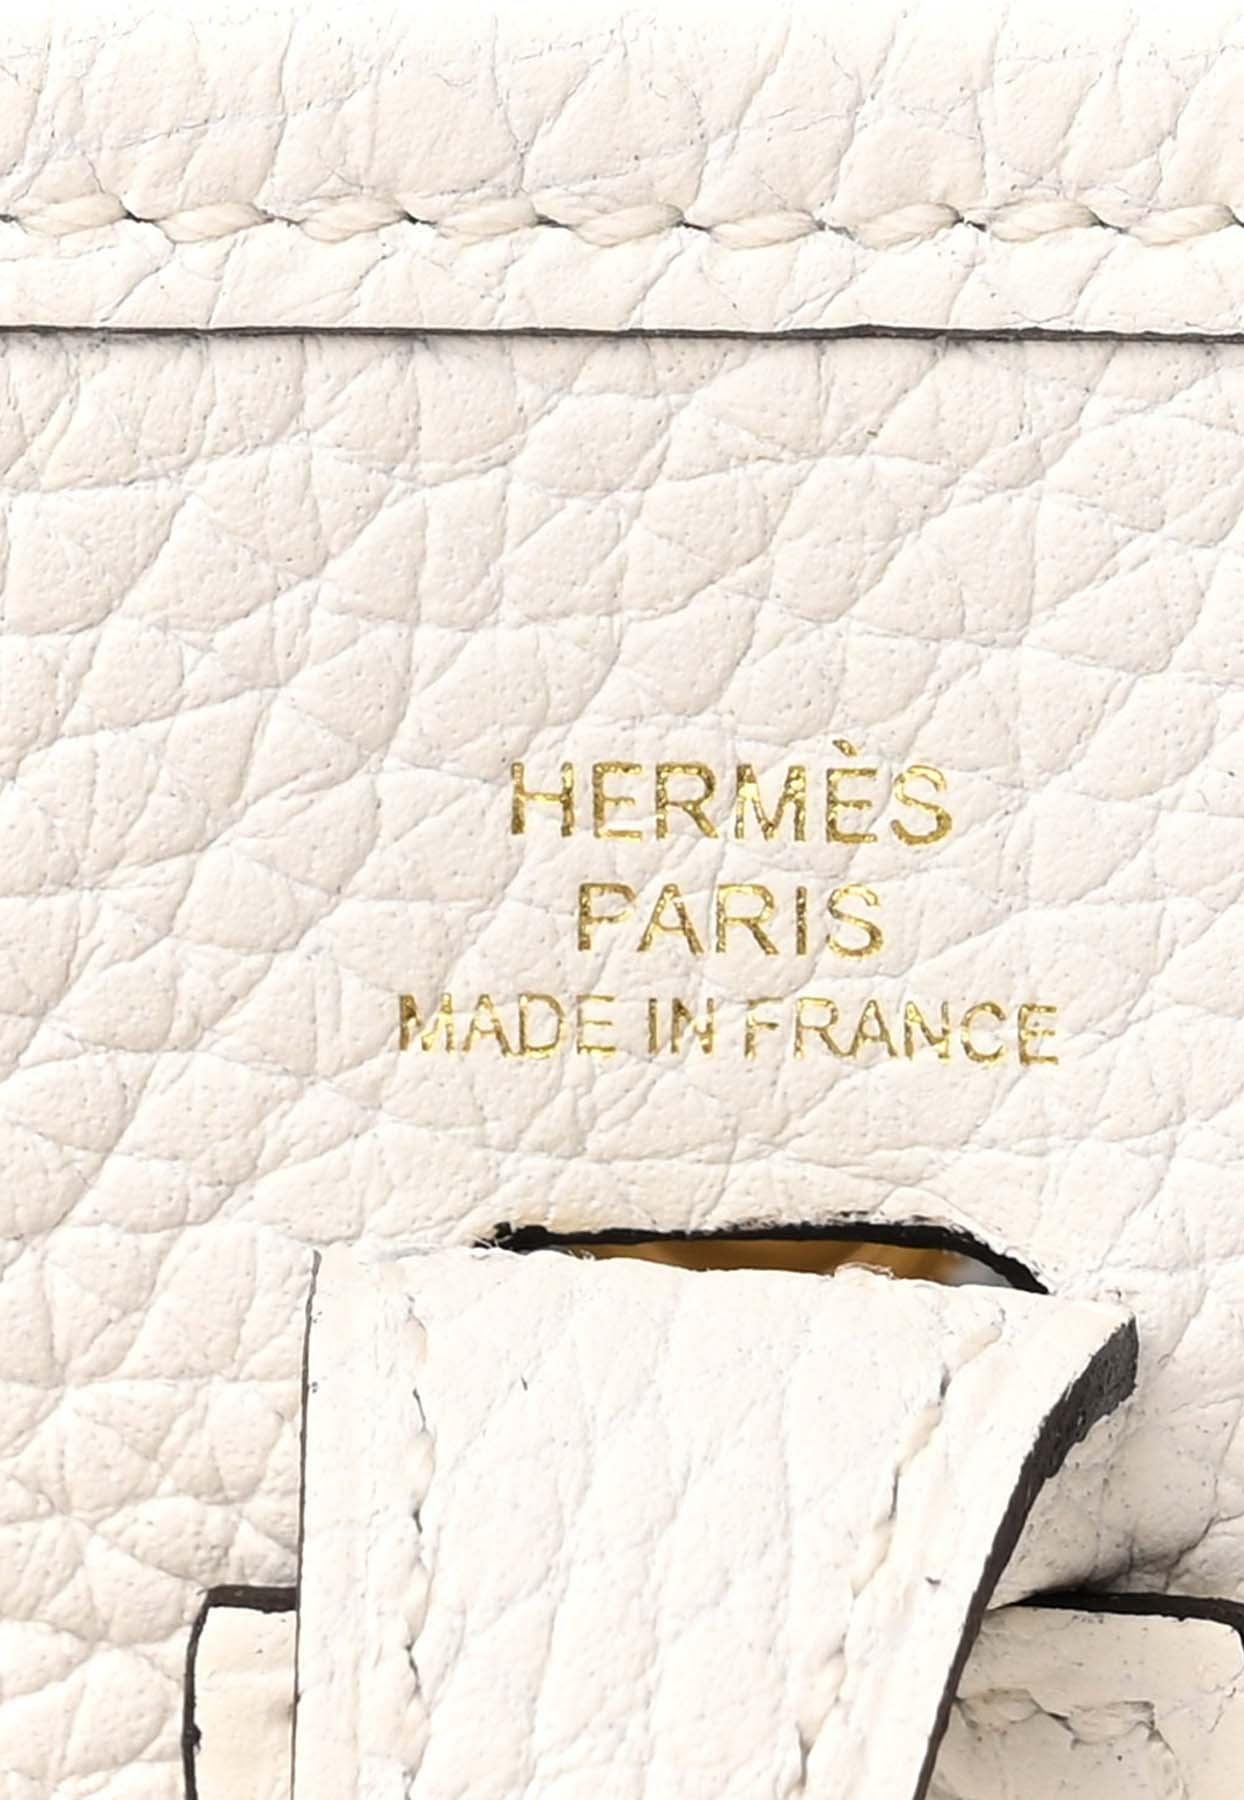 Hermes Birkin Bag 35cm White Clemence Gold Hardware